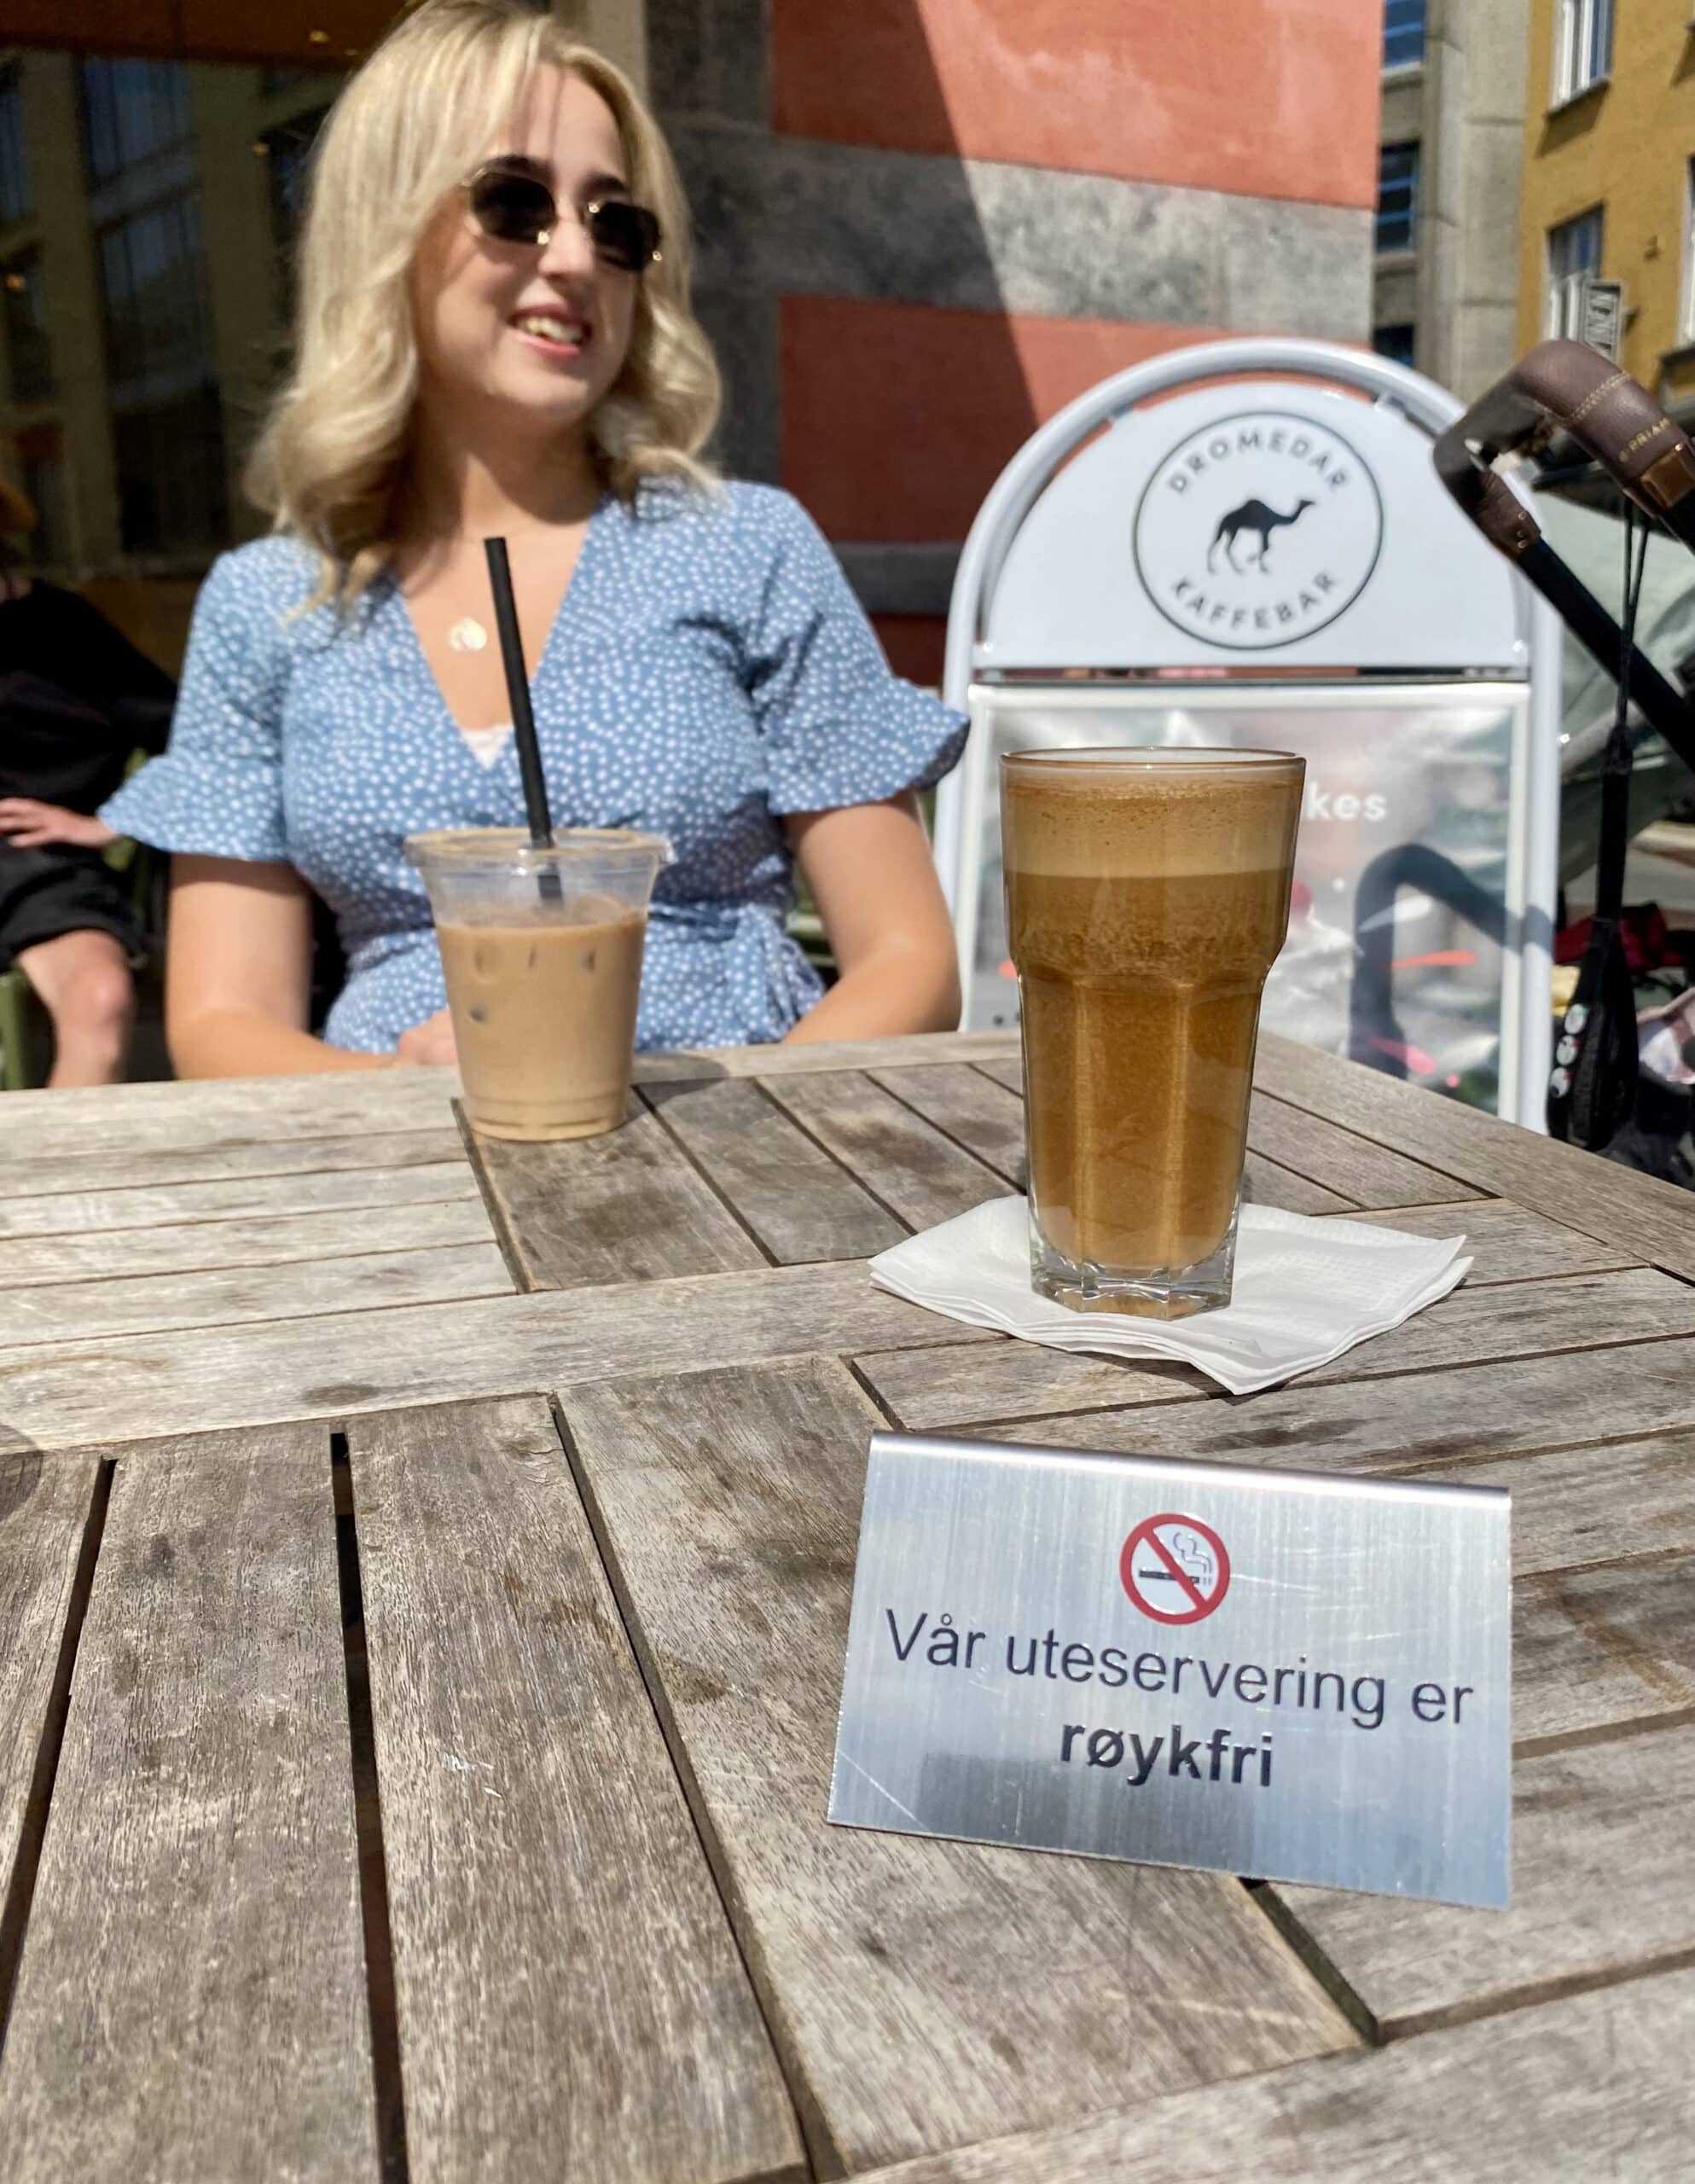 Kvinne drikker kaffe på kafe som har uteservering. Fremst i bildet er et et skilt med teksten Vår uteservering er røykfri.